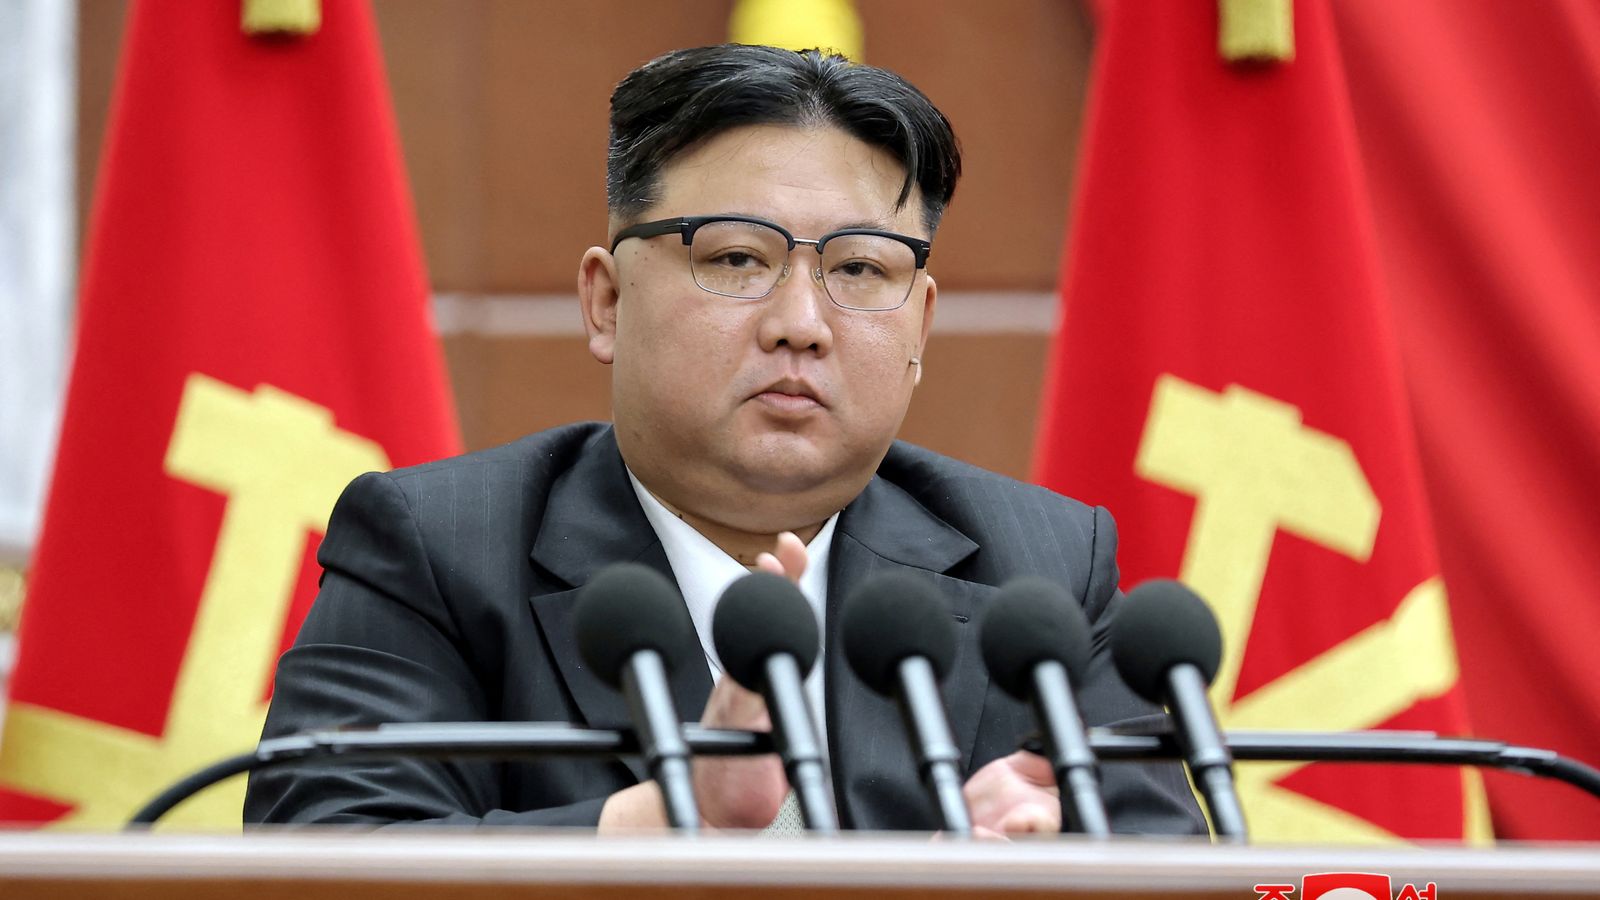 Според Корейската централна новинарска агенция KCNA той каза Тежката ситуация